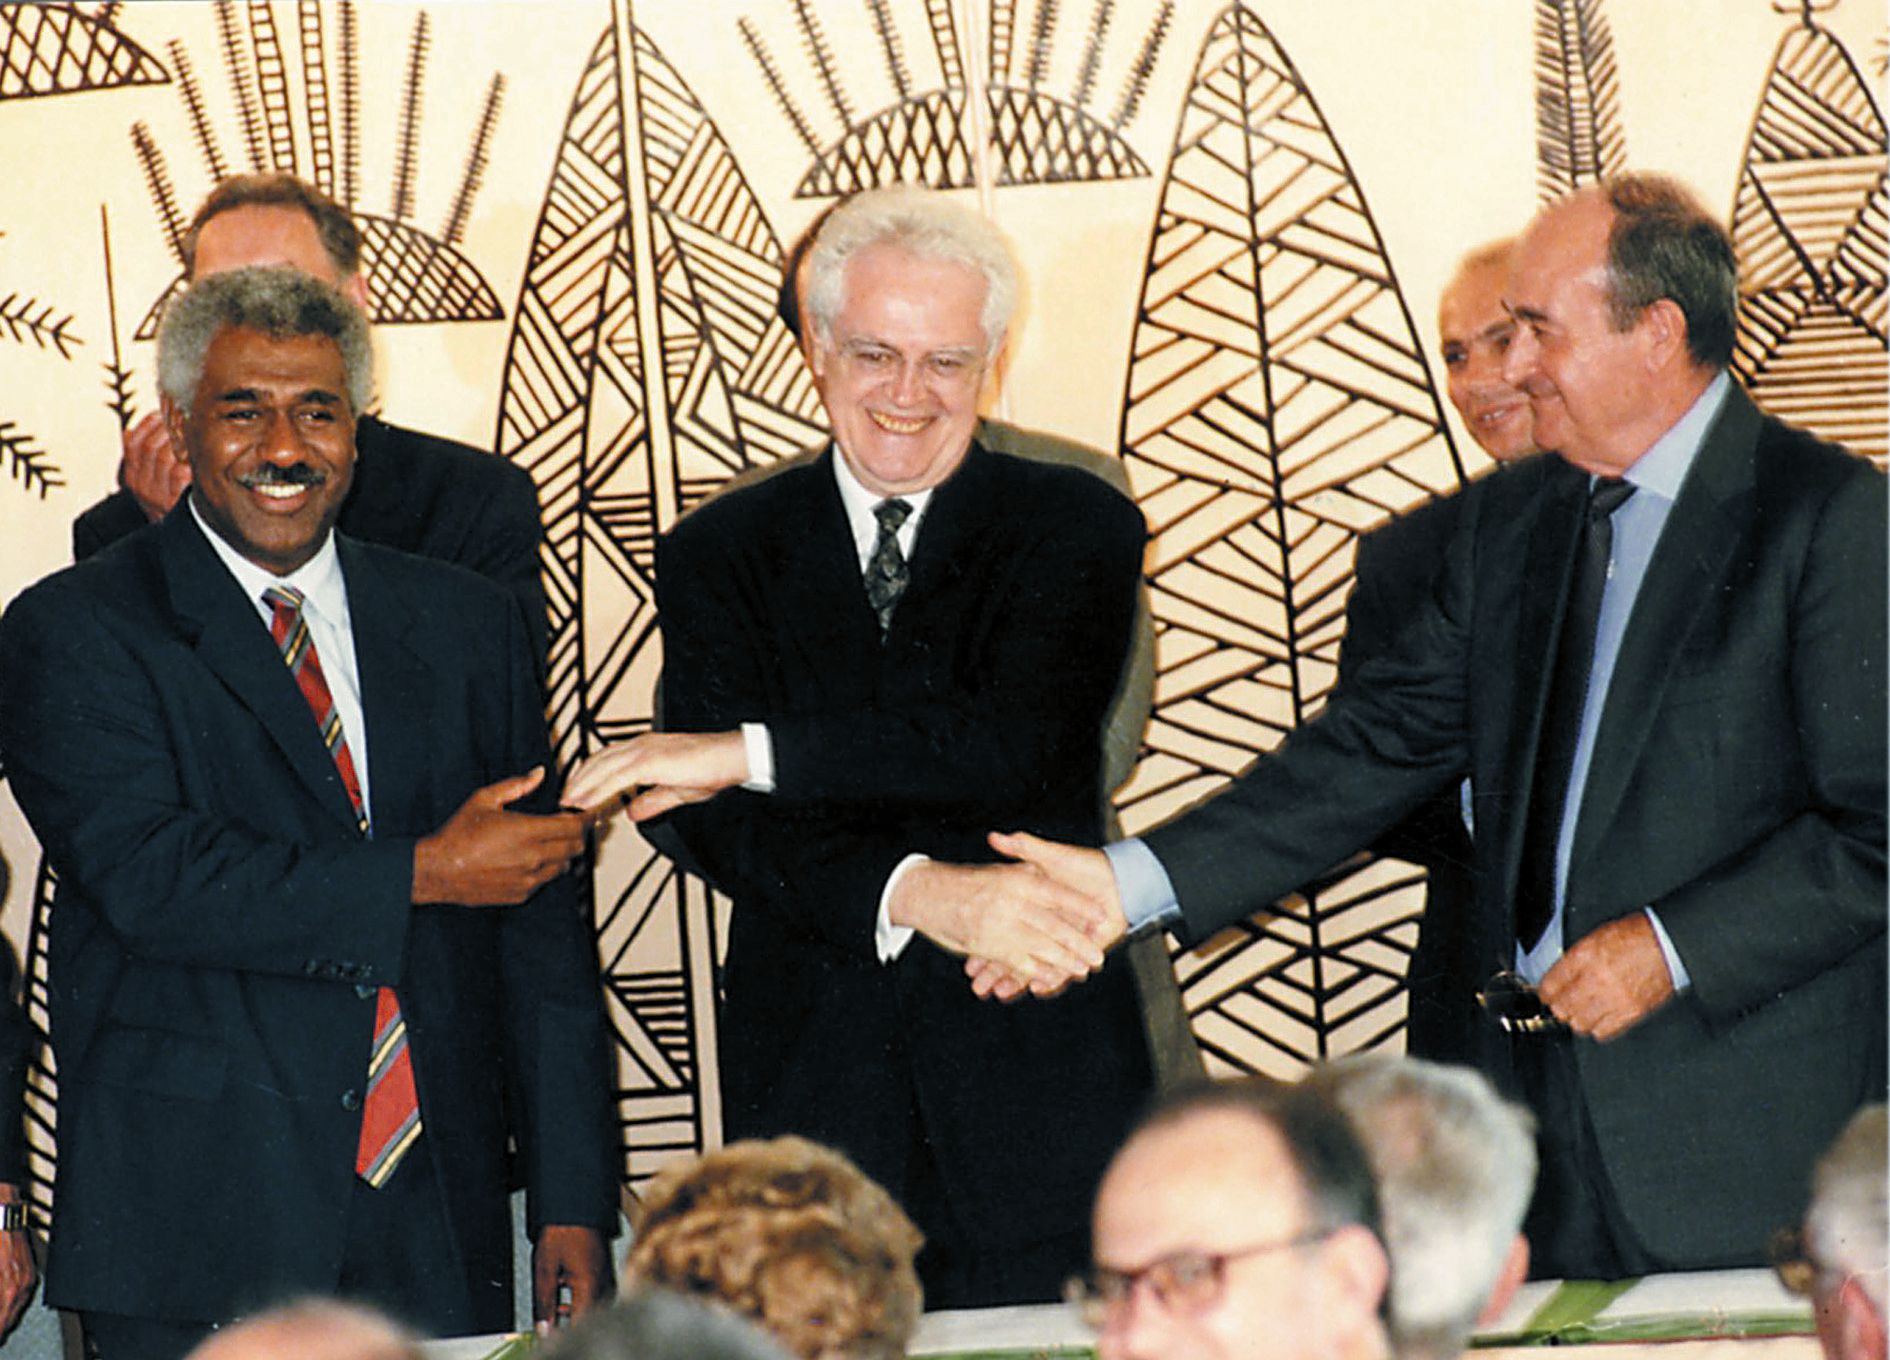 Le président du FLNKS Roch Wamytan, le Premier ministre Lionel Jospin, et le leader du RPCR Jacques Lafleur signent en 1998 l’accord de Nouméa, source du régime institutionnel sous lequel vivent aujourd’hui les Calédoniens. Photo Archives LNC